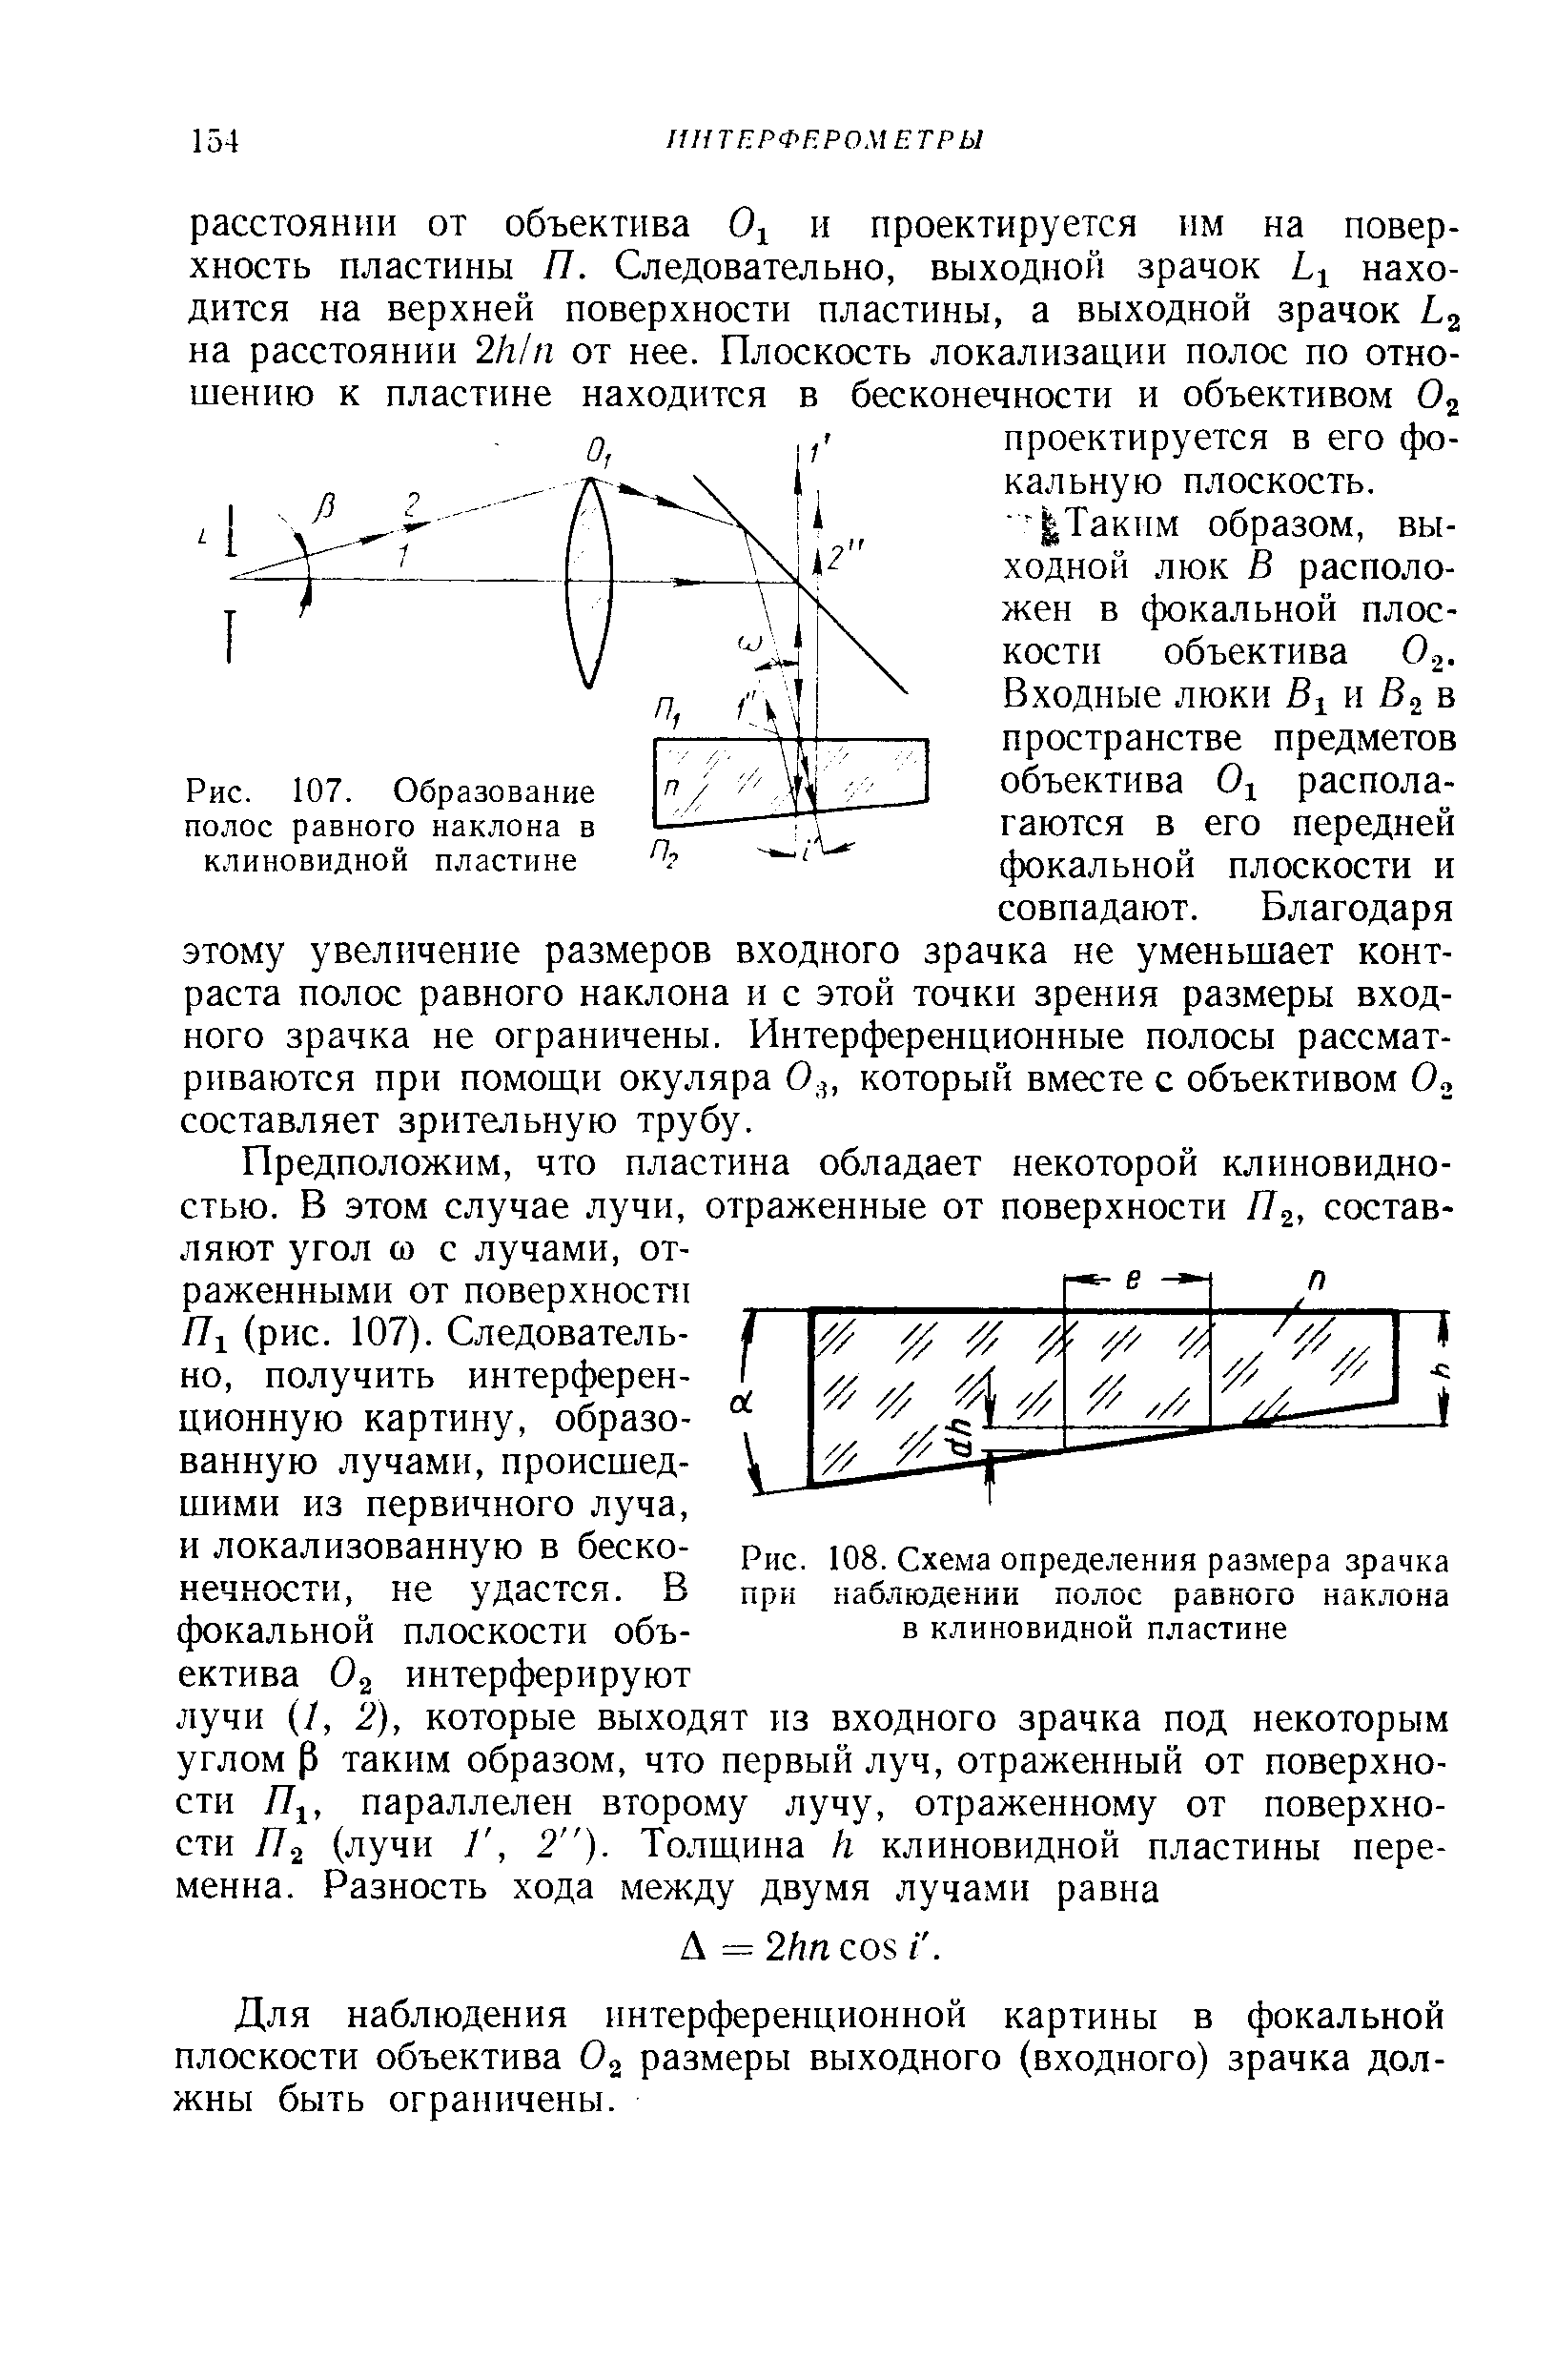 Рис. 108. Схема определения размера зрачка при наблюдении полос равного наклона в клиновидной пластине
